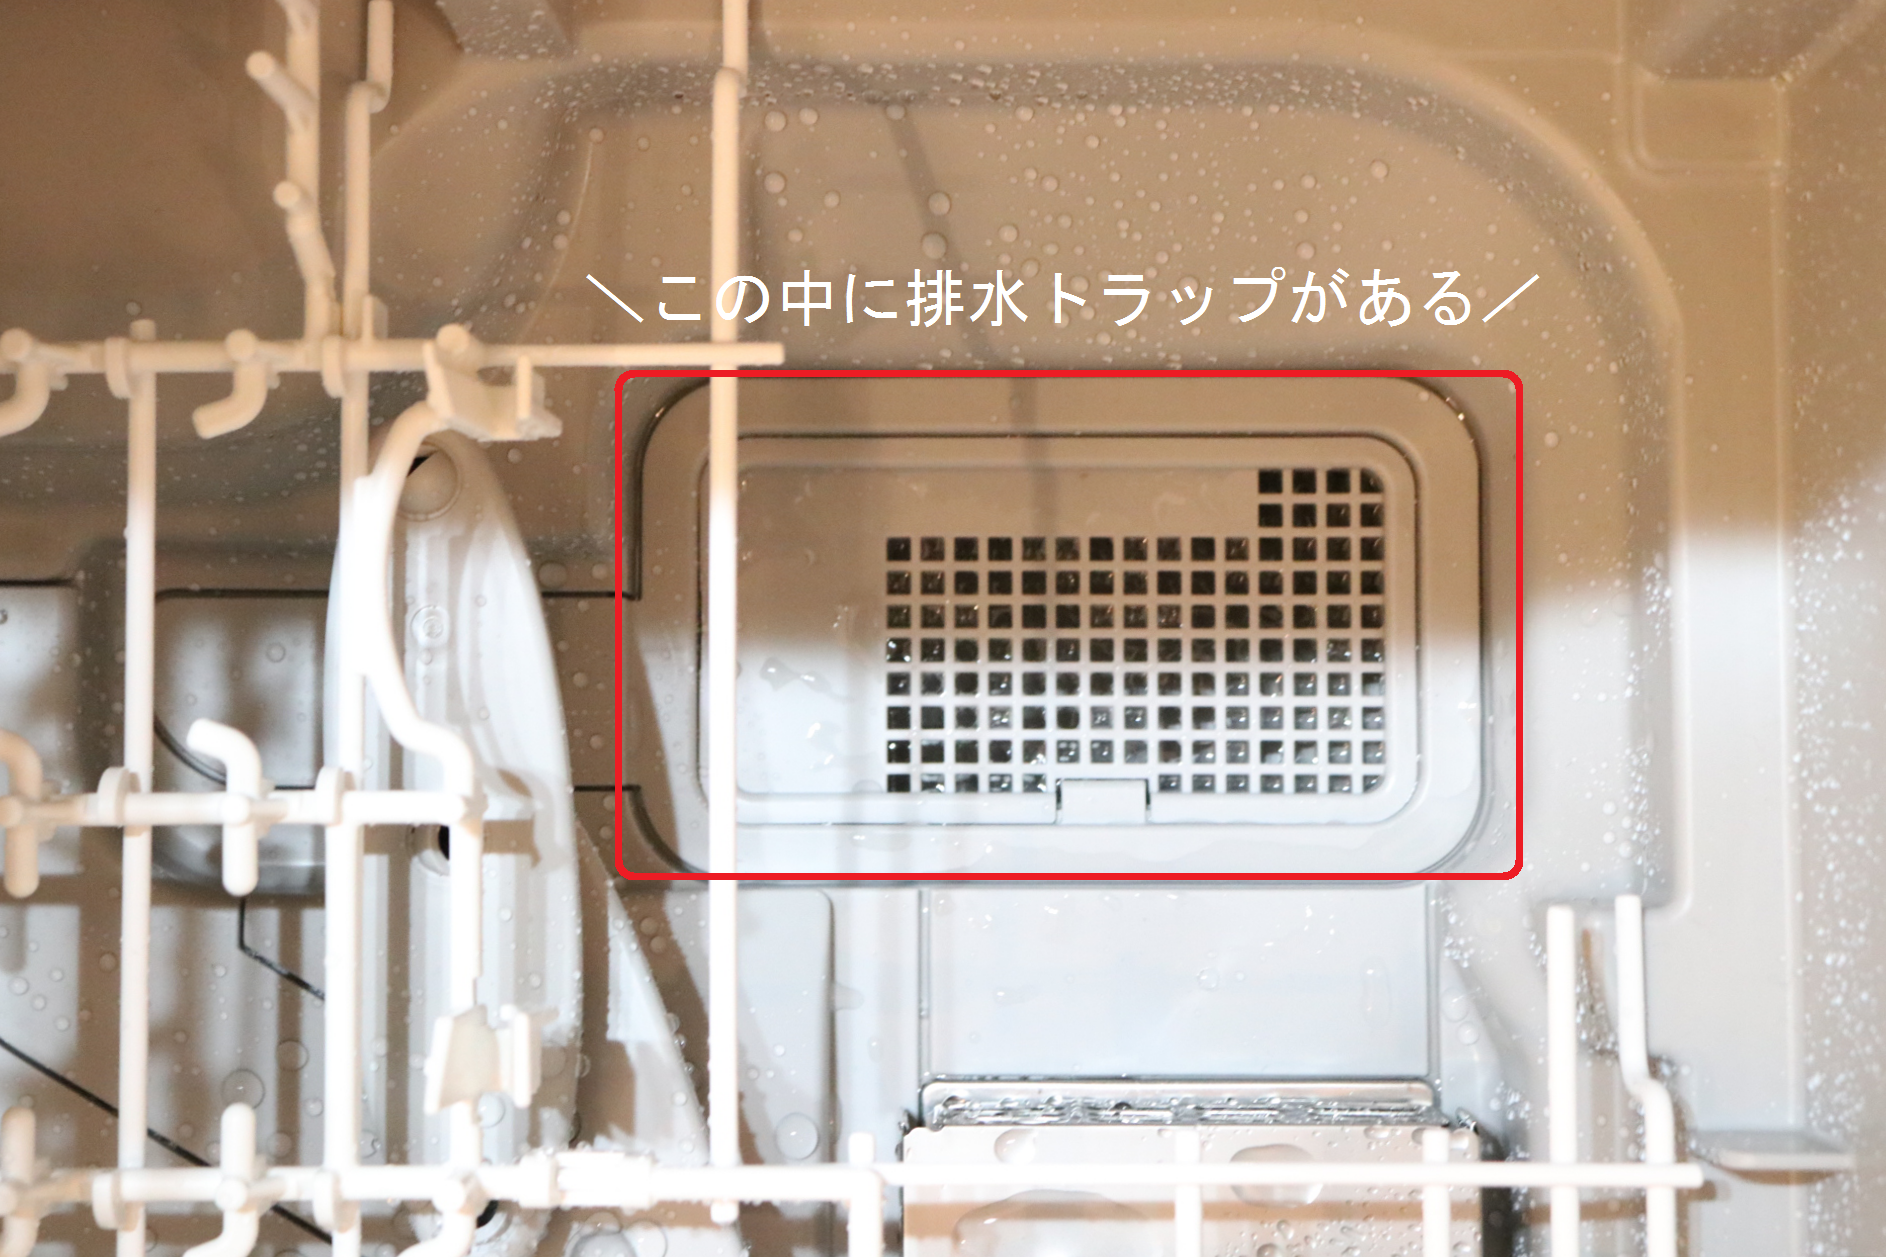 機 排水 洗 食 TOTOの食器洗浄機EUD510が洗浄前に排水してしまう不具合を解消